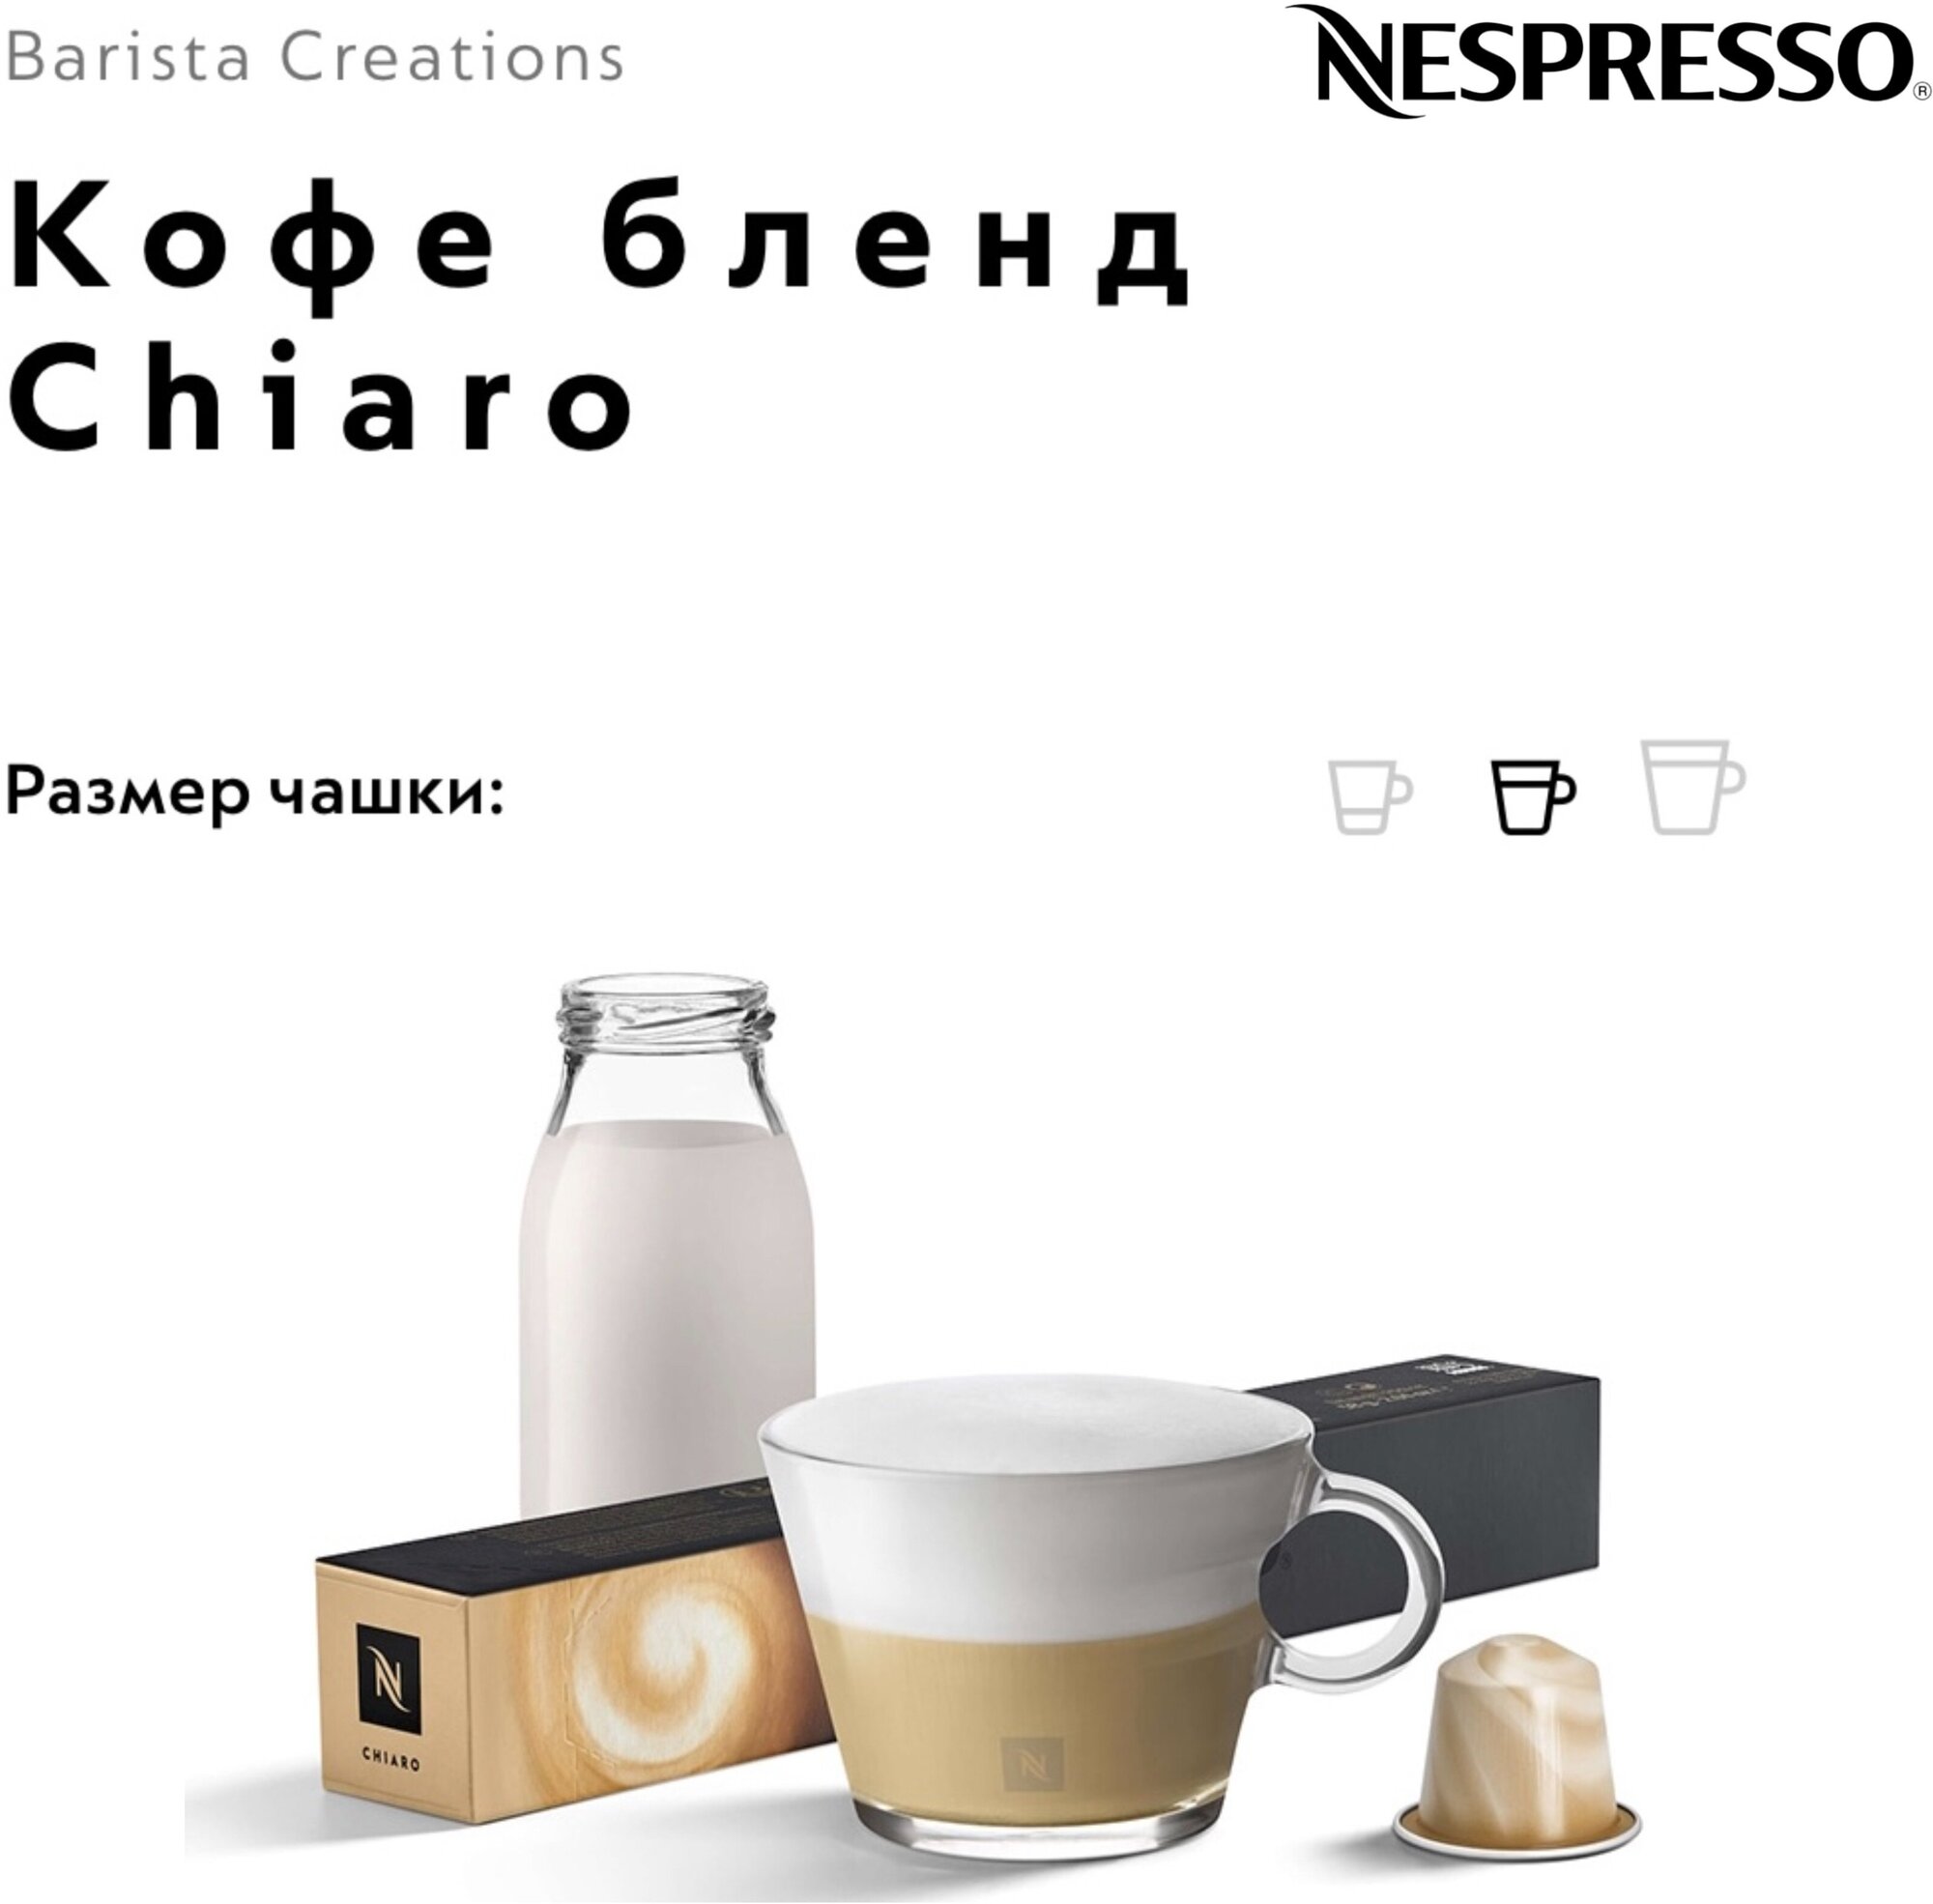 Капсулы для кофемашин Nespresso - фото №3